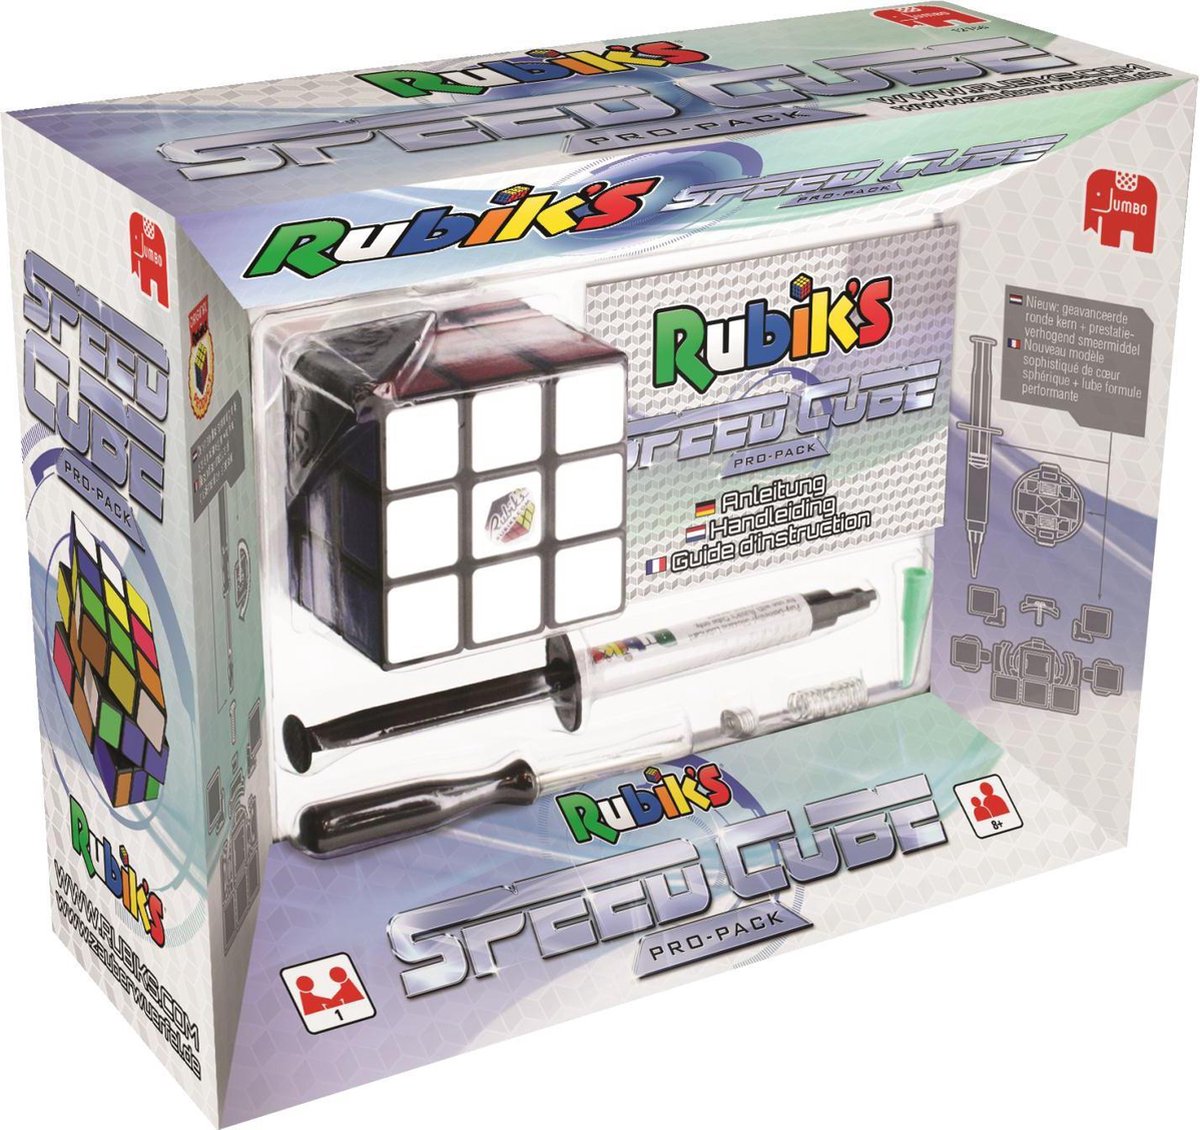 GAN Cube de Vitesse 356RS 3x3x3, Speed Cube Classique Résolution